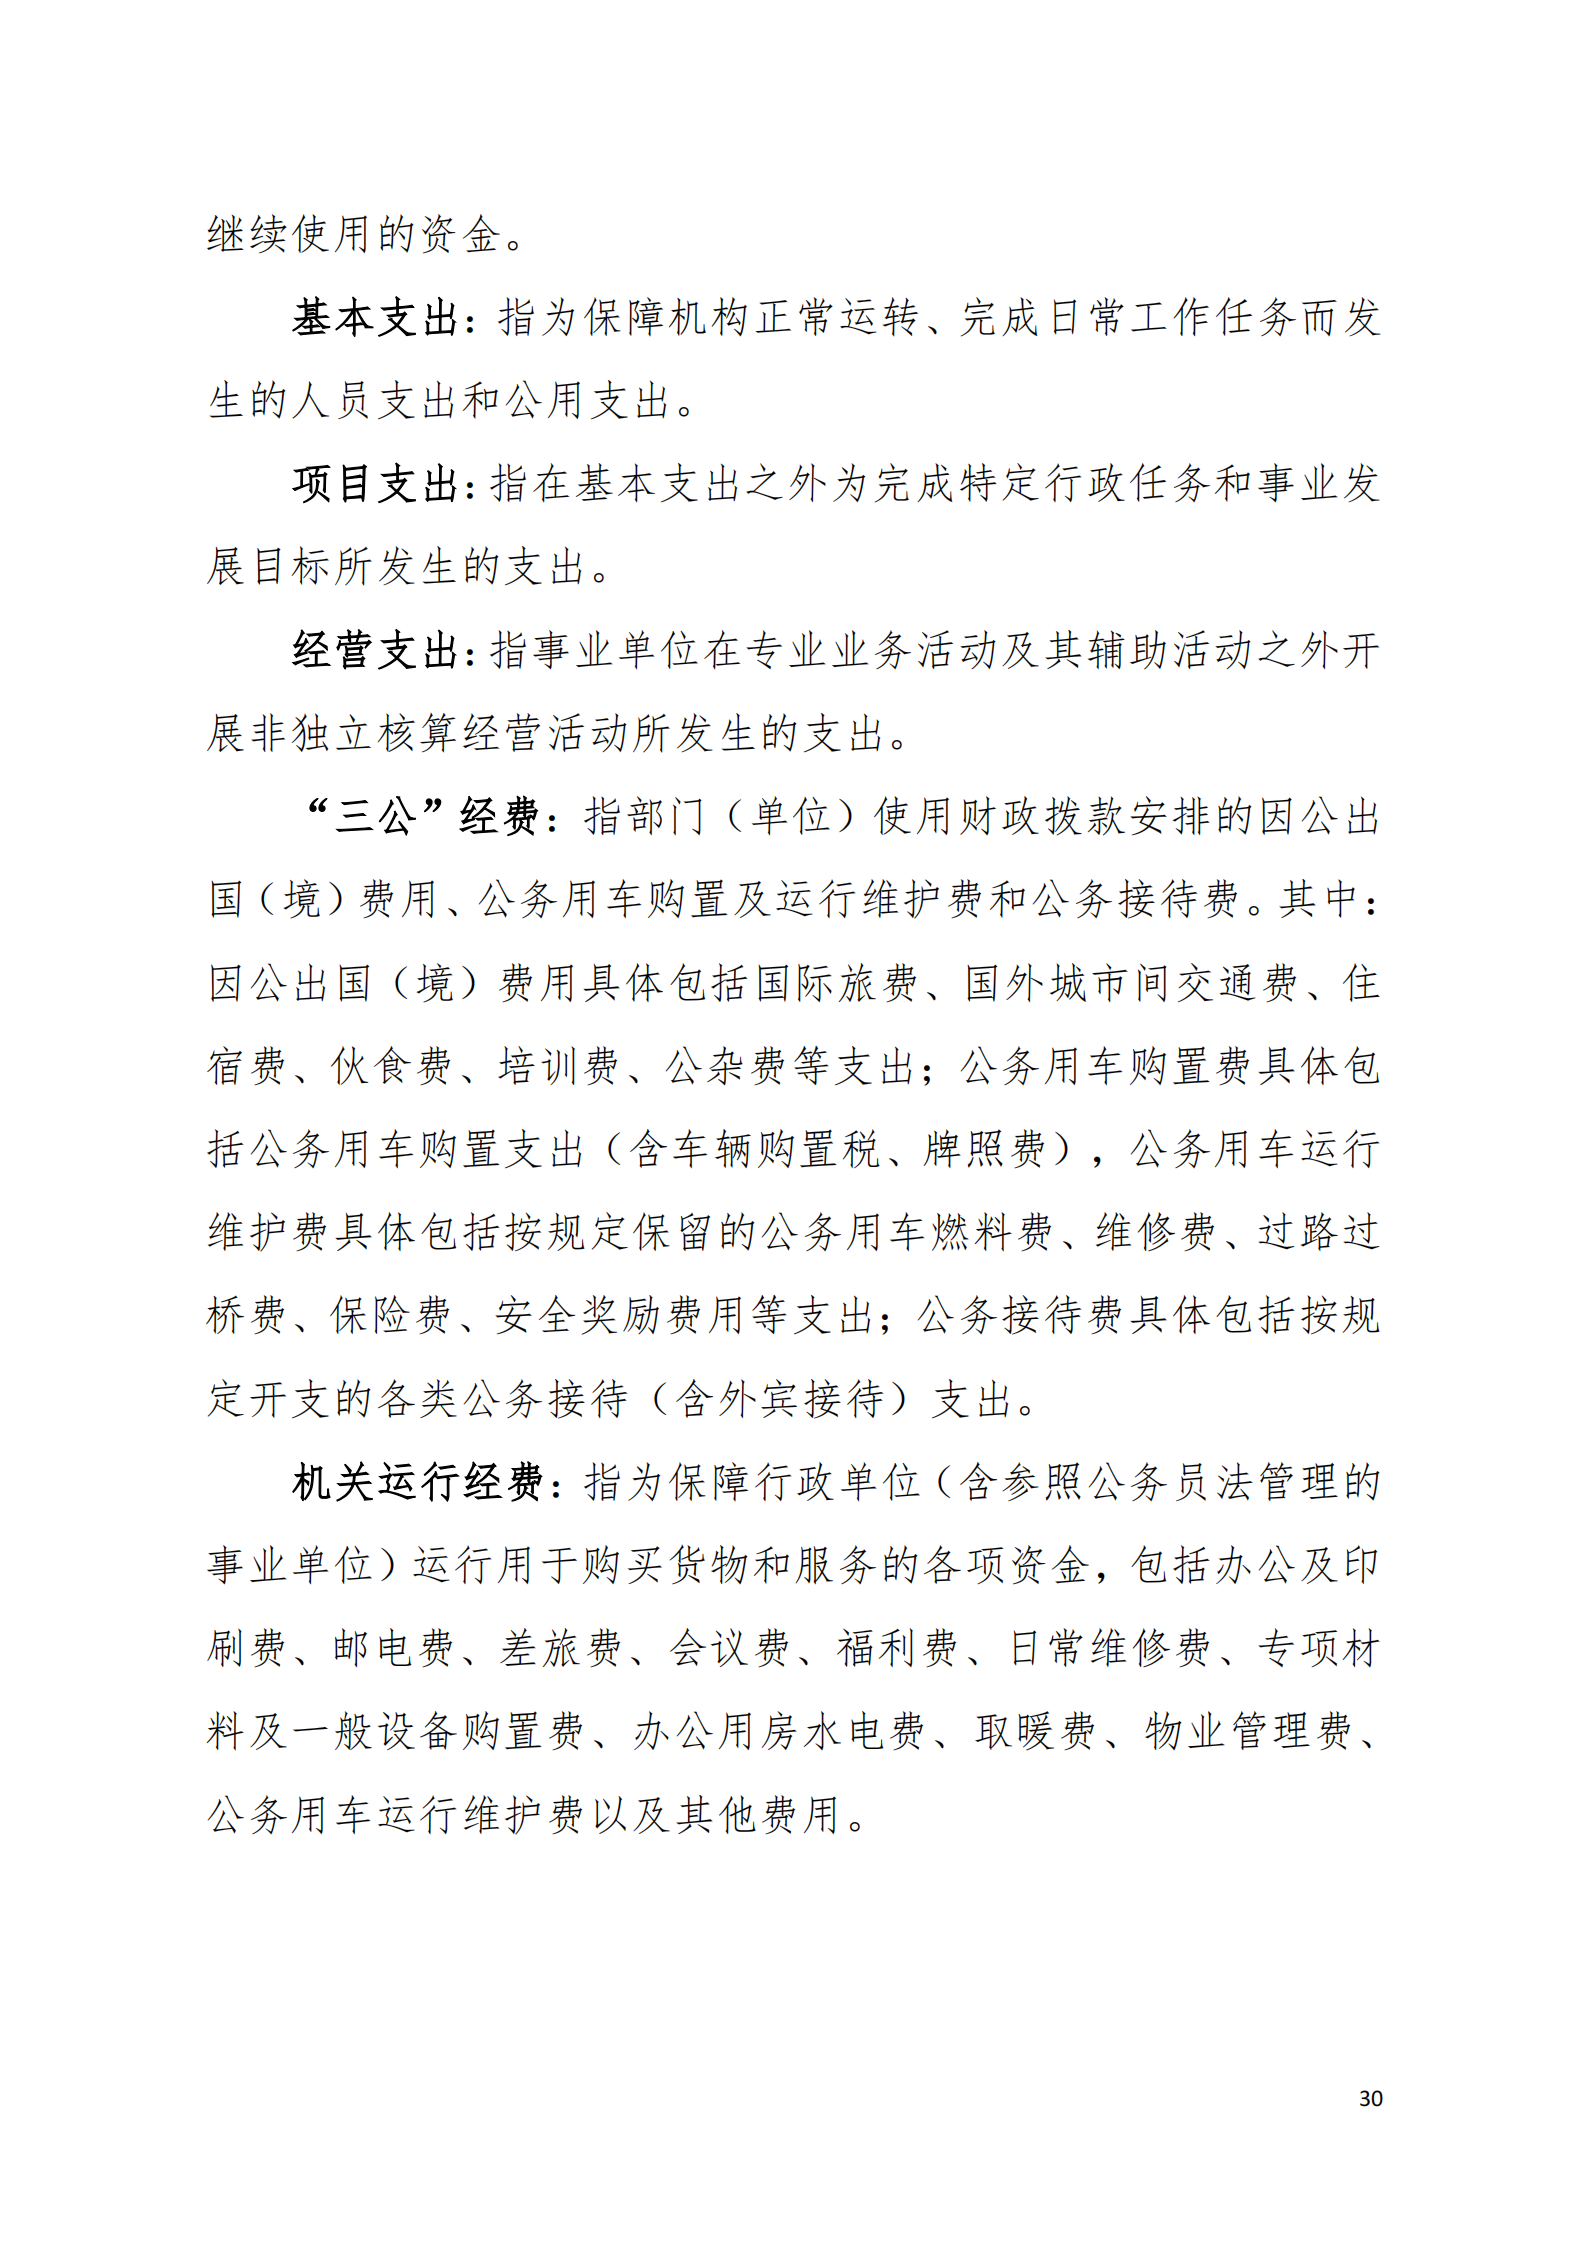 2022年度阳江高新技术产业开发区财政局投资审核中心部门决算1_02.png